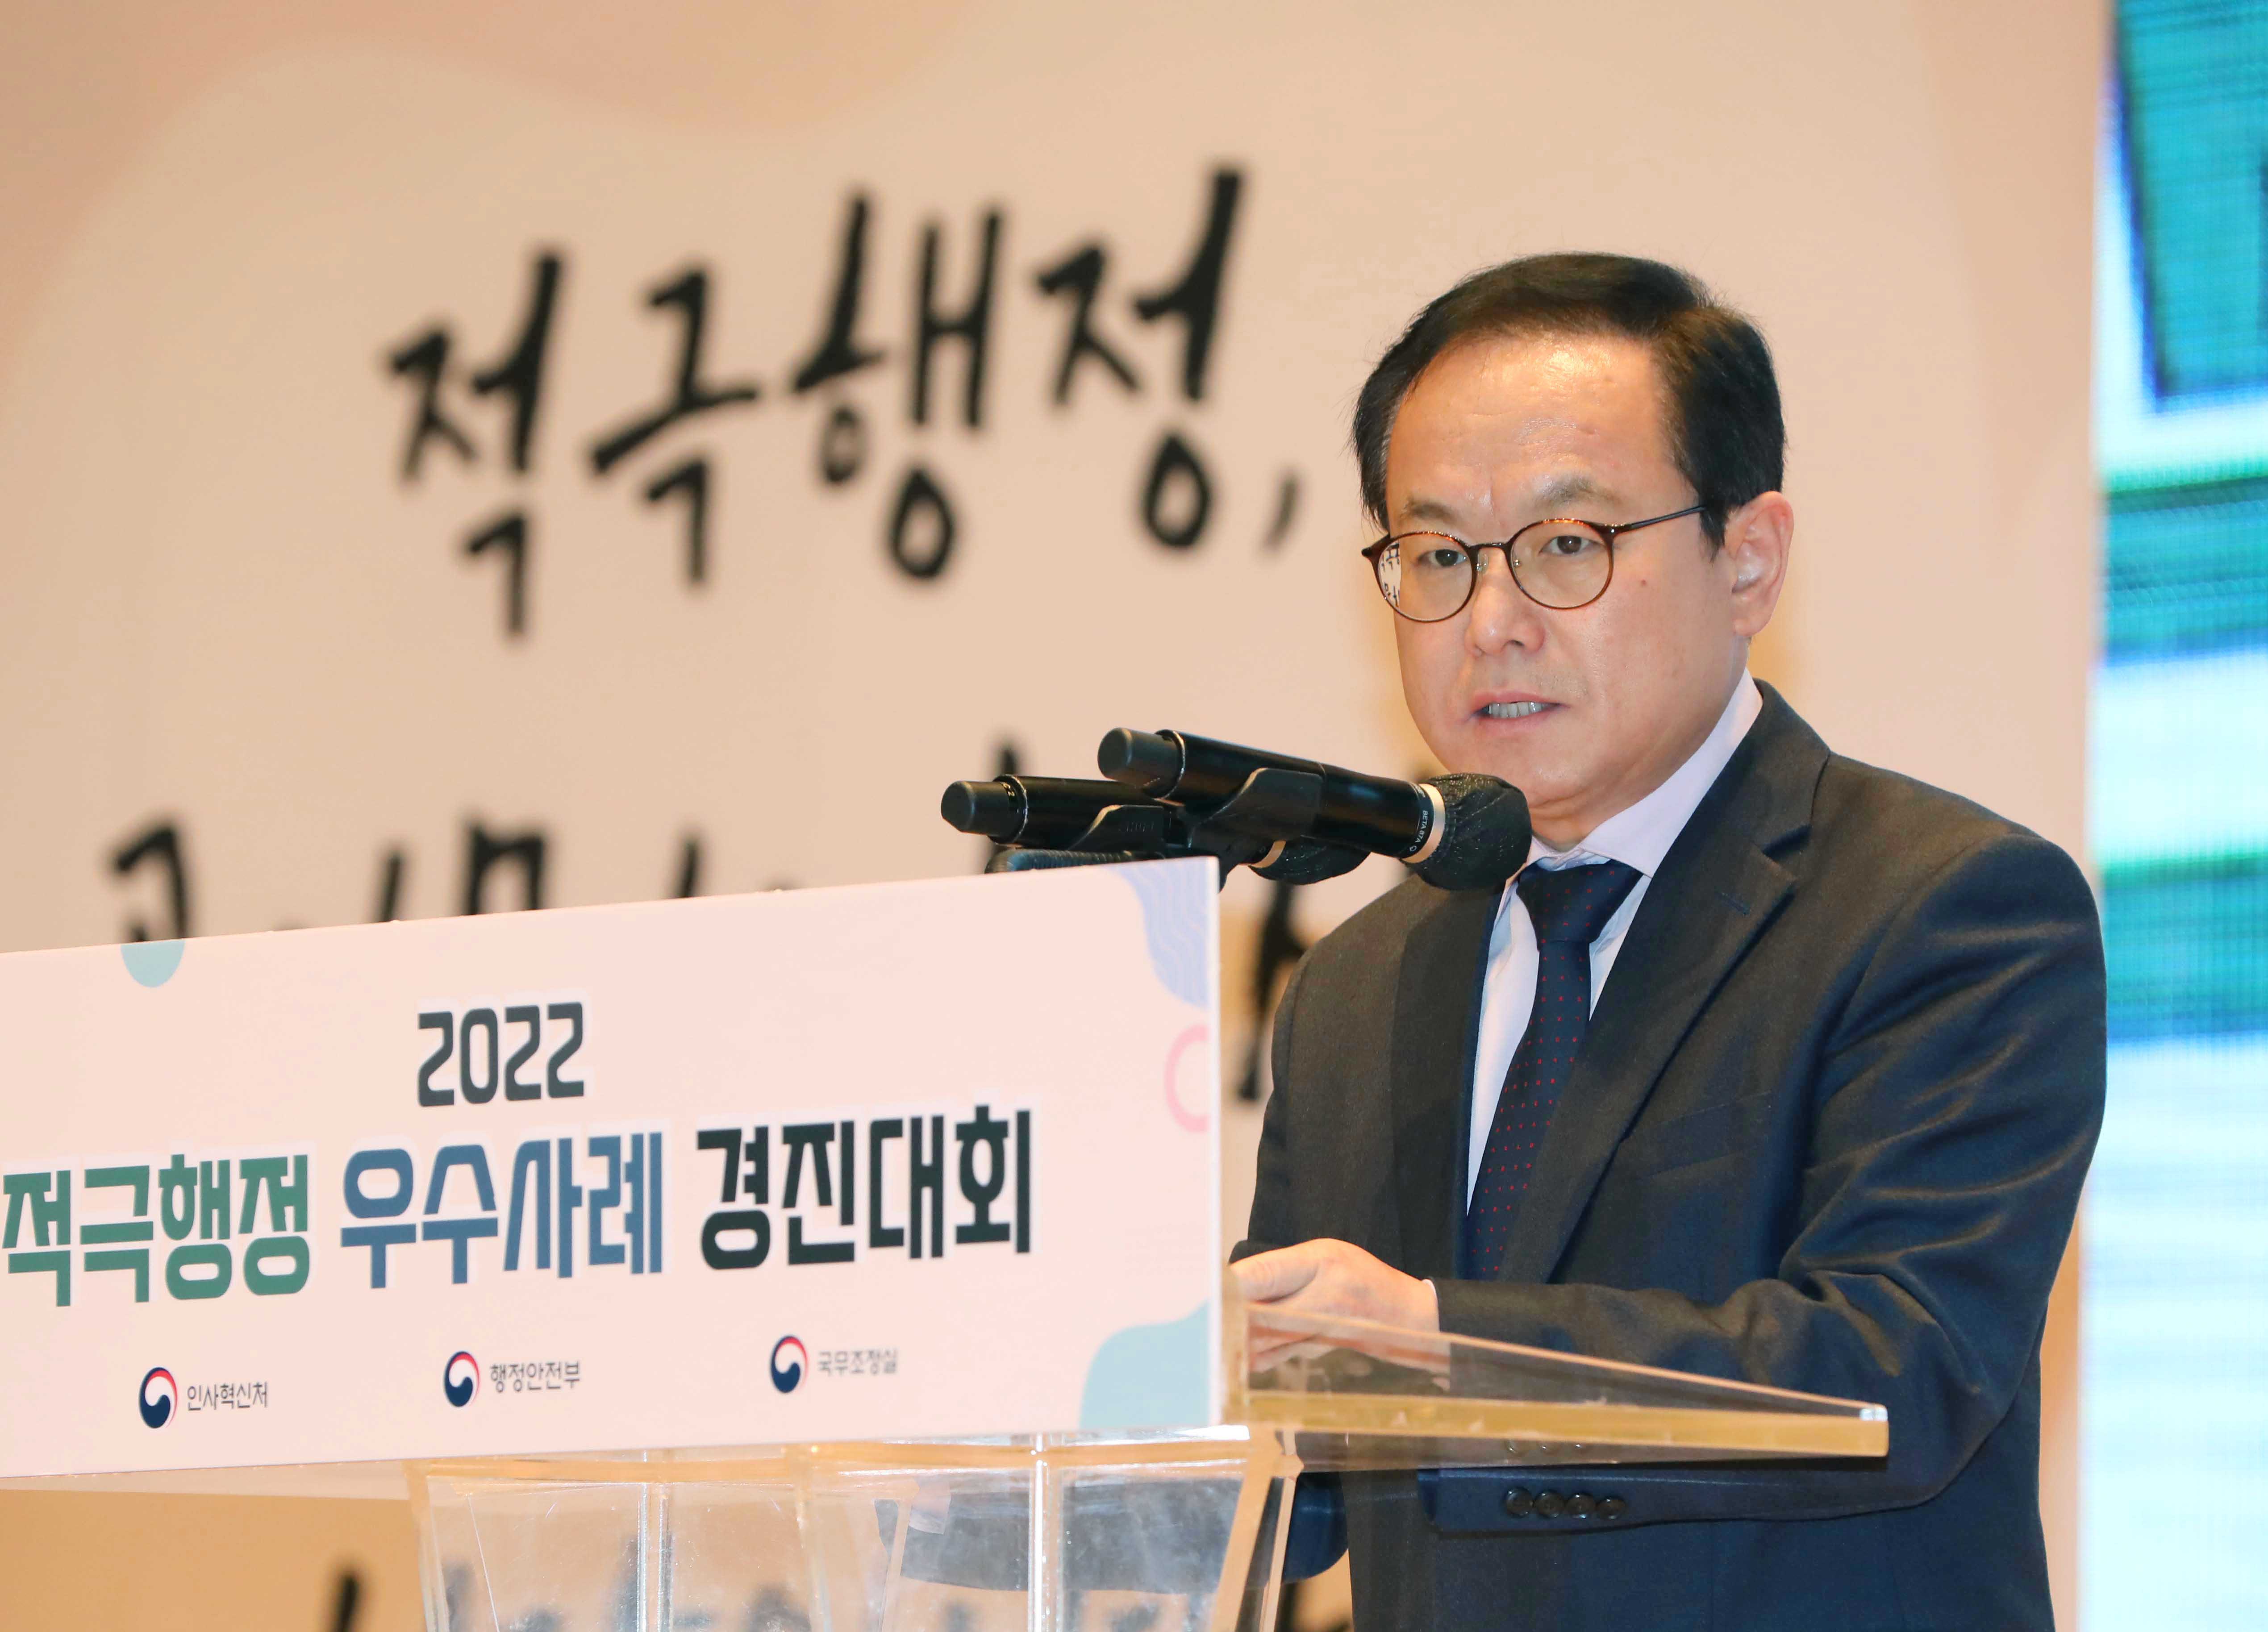 김승호 인사혁신처장이 11월 24일 정부세종청사에서 열린 '2022년 적극행정 우수사례 경진대회'에서 개회사를 하고 있는 모습.